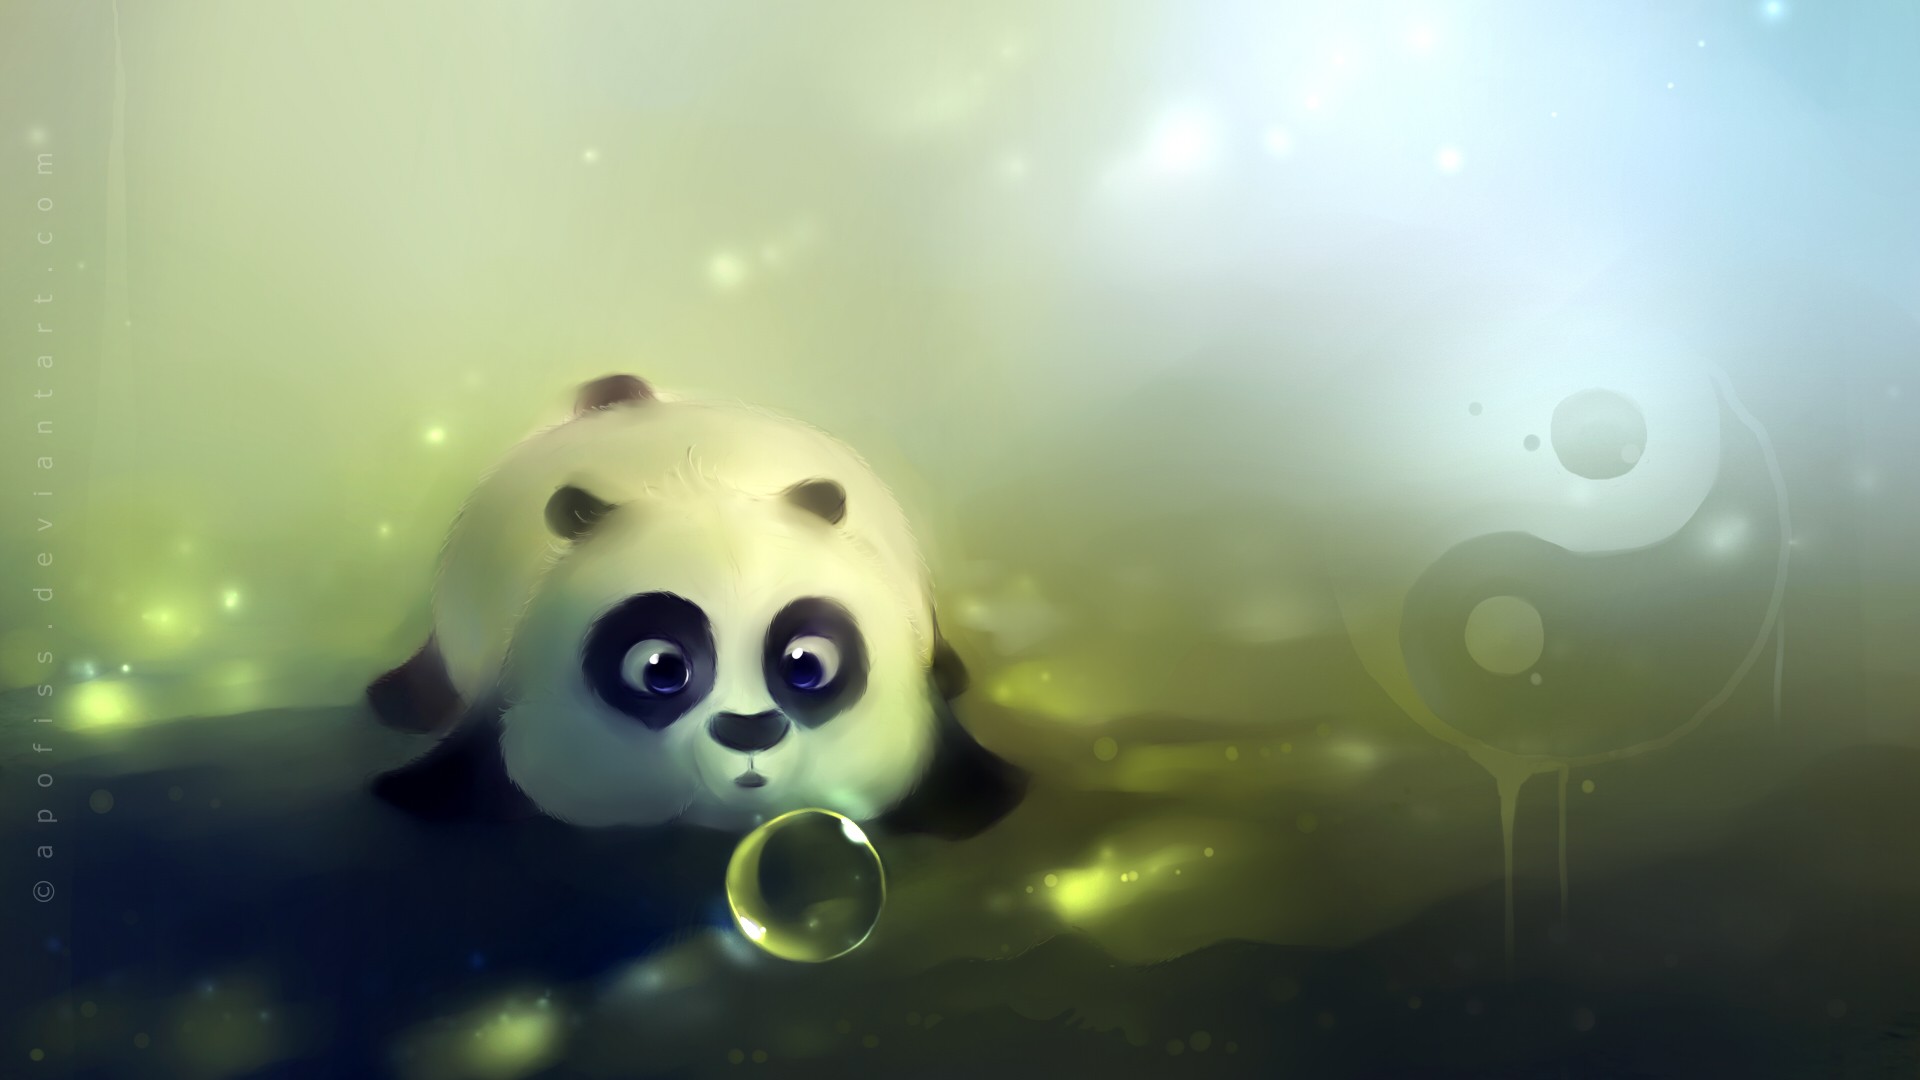 General 1920x1080 Apofiss panda artwork bubbles Yin and Yang fantasy art